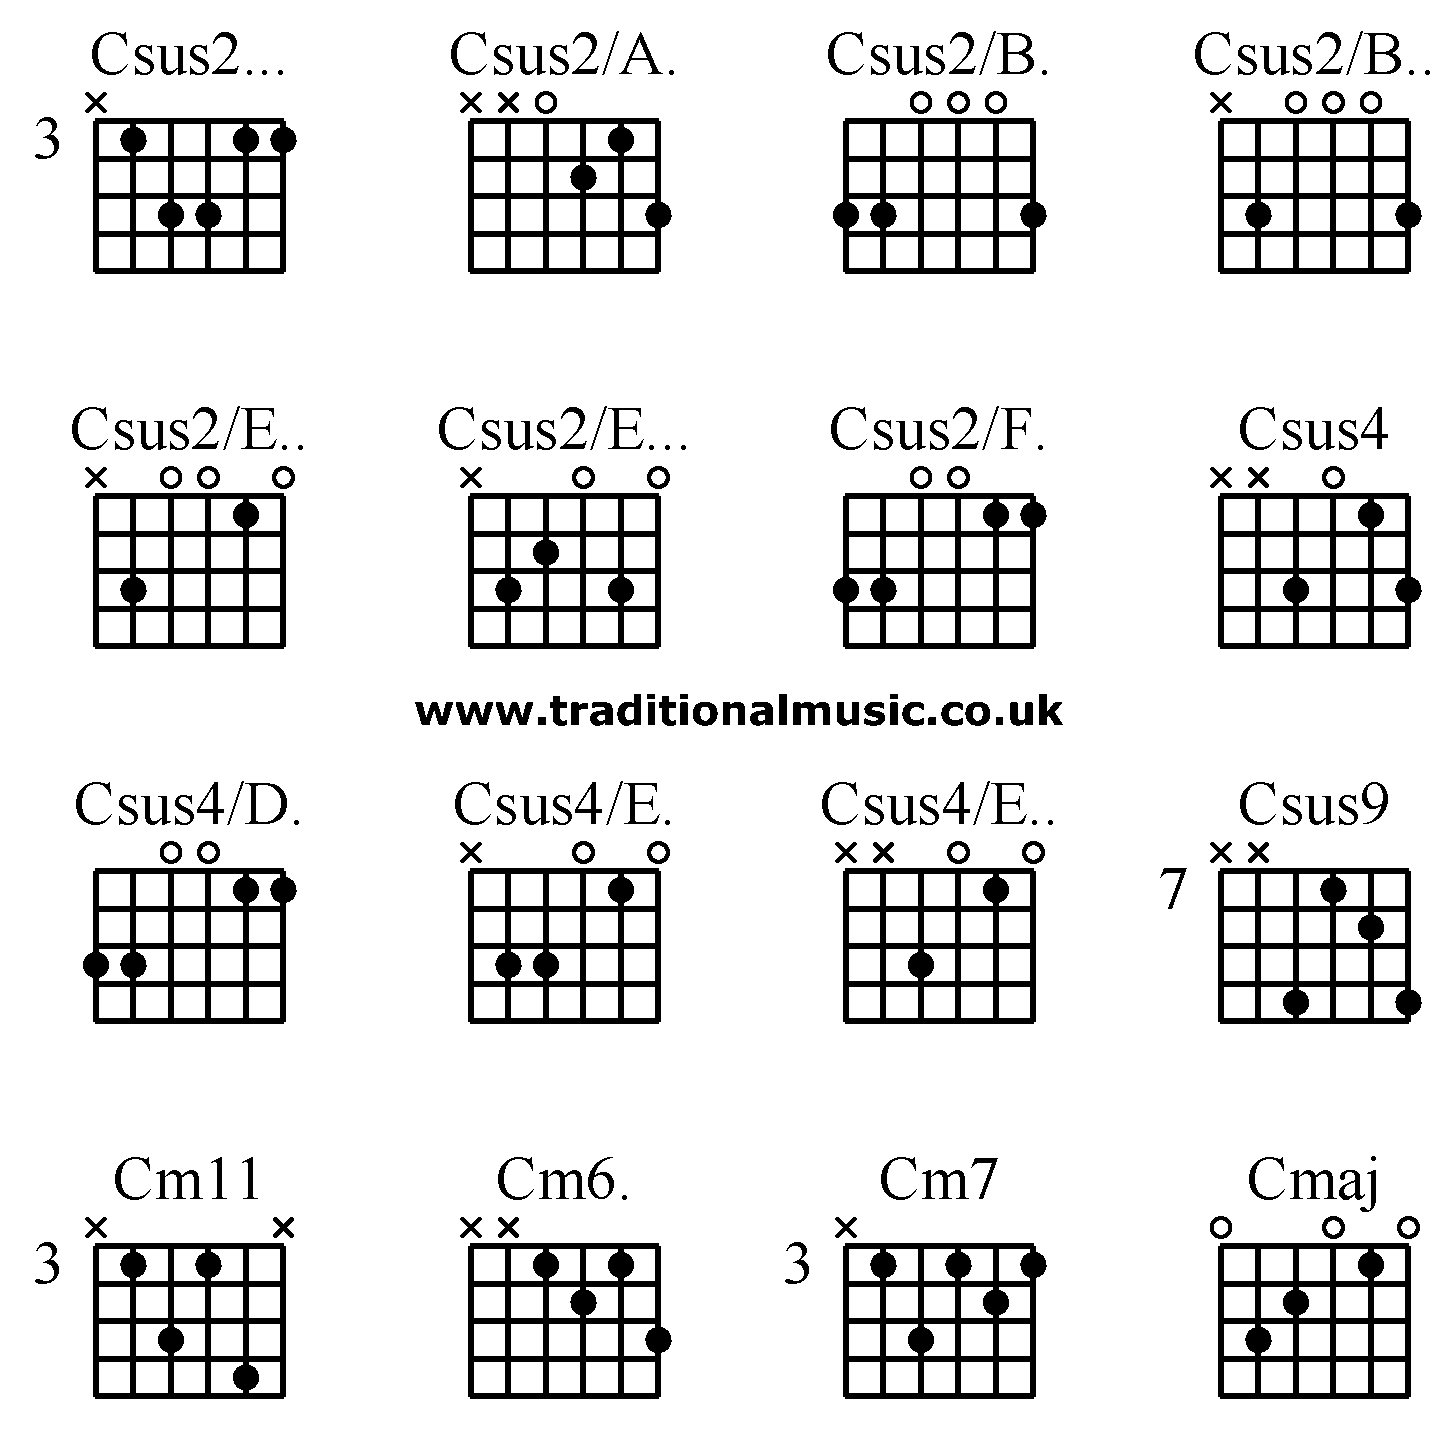 Advanced guitar chords:Csus2... Csus2/A. Csus2/B. Csus2/B.., Csus2/E.. Csus2/E... Csus2/F. Csus4, Csus4/D. Csus4/E. Csus4/E.. Csus9 , Cm11 Cm6. Cm7 Cmaj